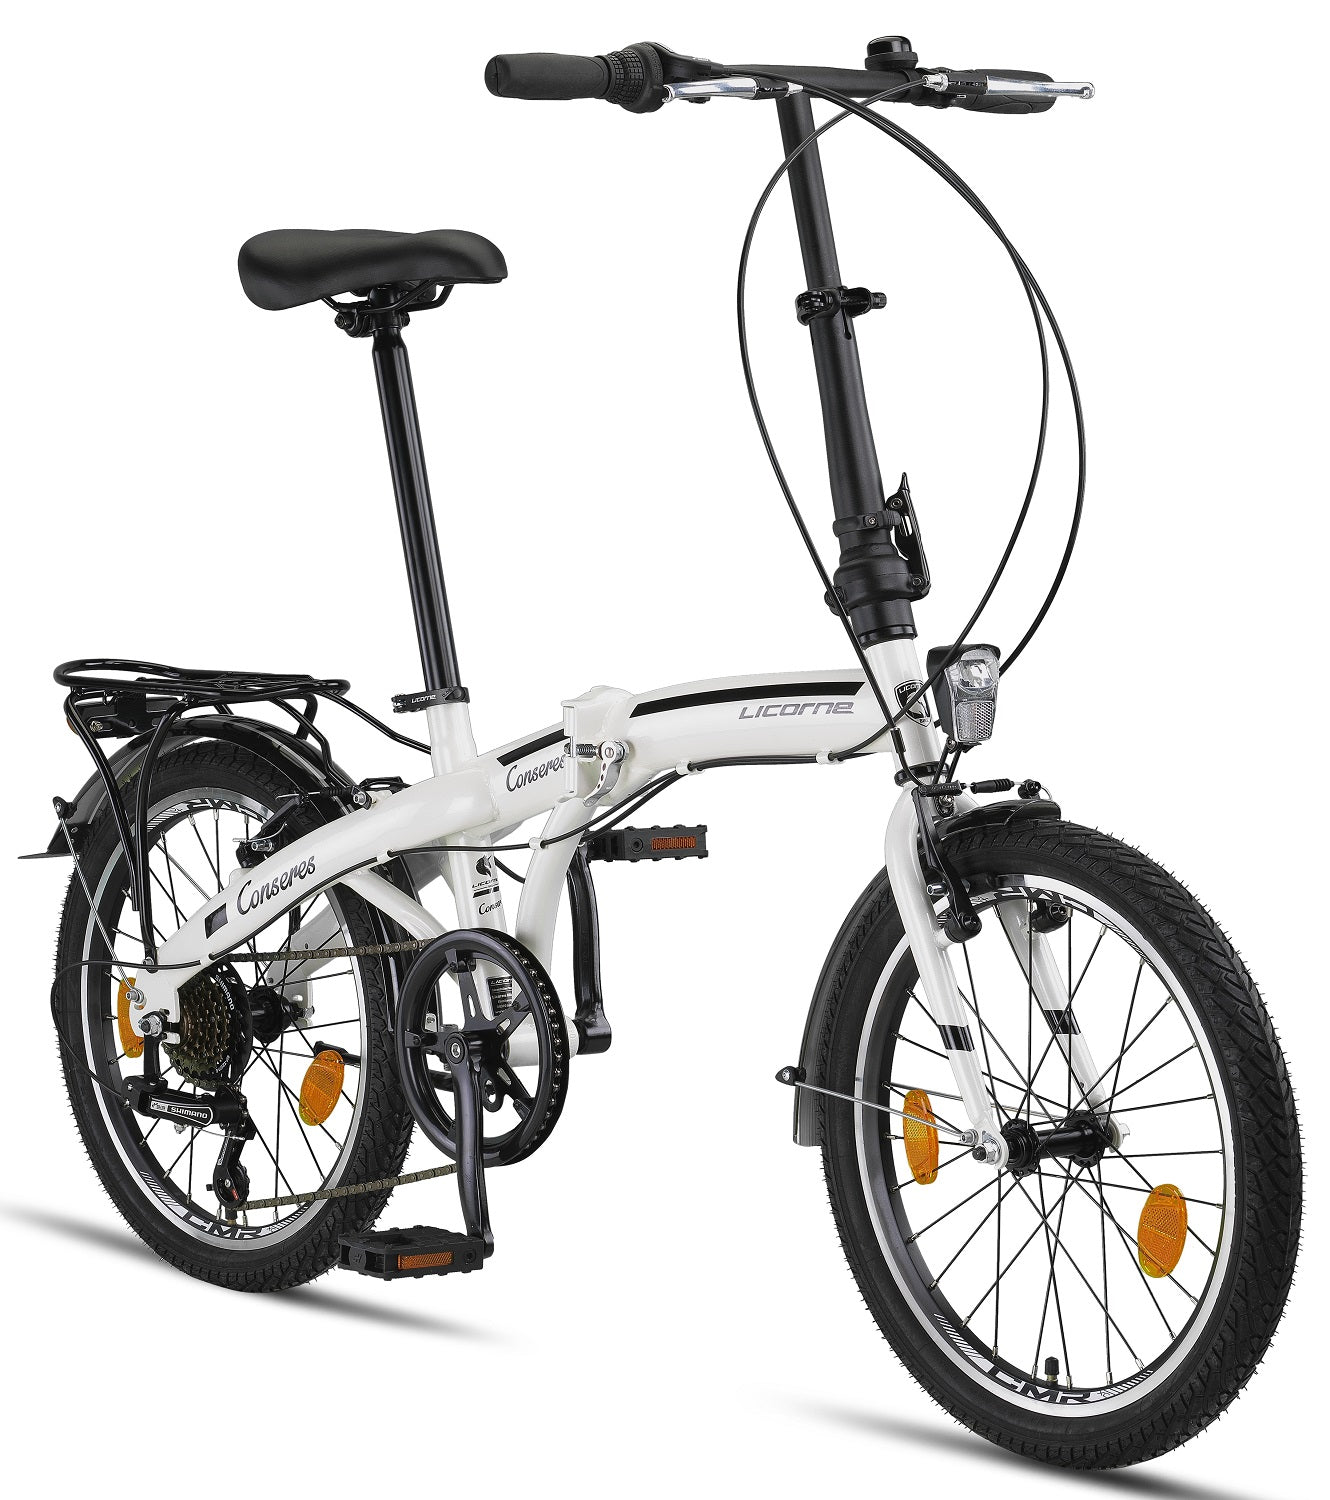 Licorne Bike Conseres Premium Folding Bike in 20 pollici - Bicicletta per uomini, ragazzi, ragazze e signore - Cambio Shimano a 6 velocità - Holland Bike